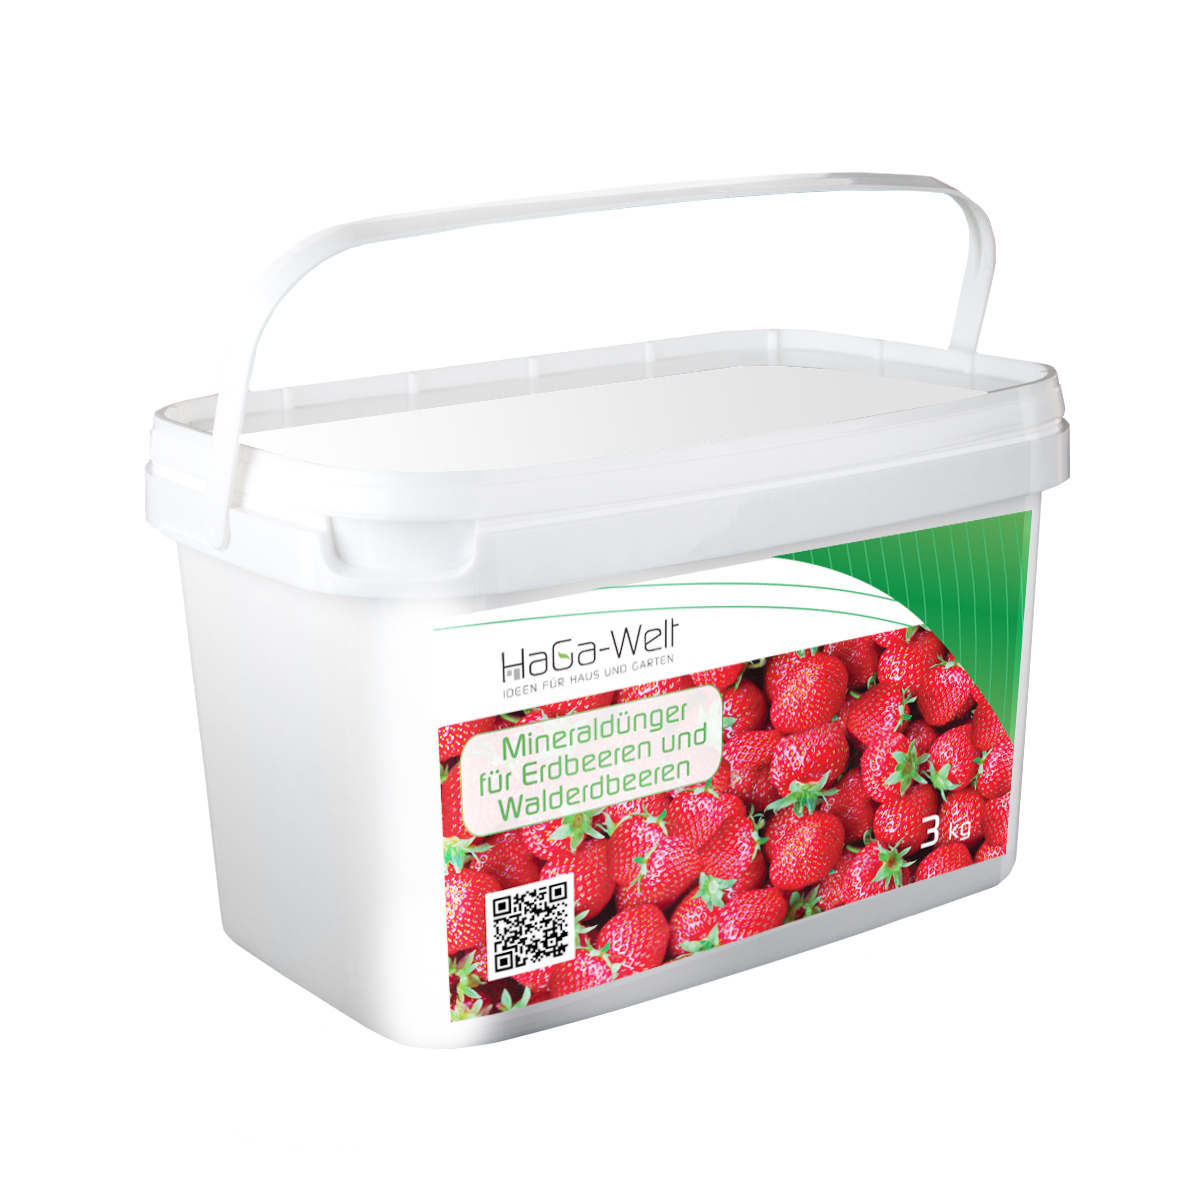 Mineraldünger für Erdbeeren und Walderdbeeren Dünger Düngemittel 3kg